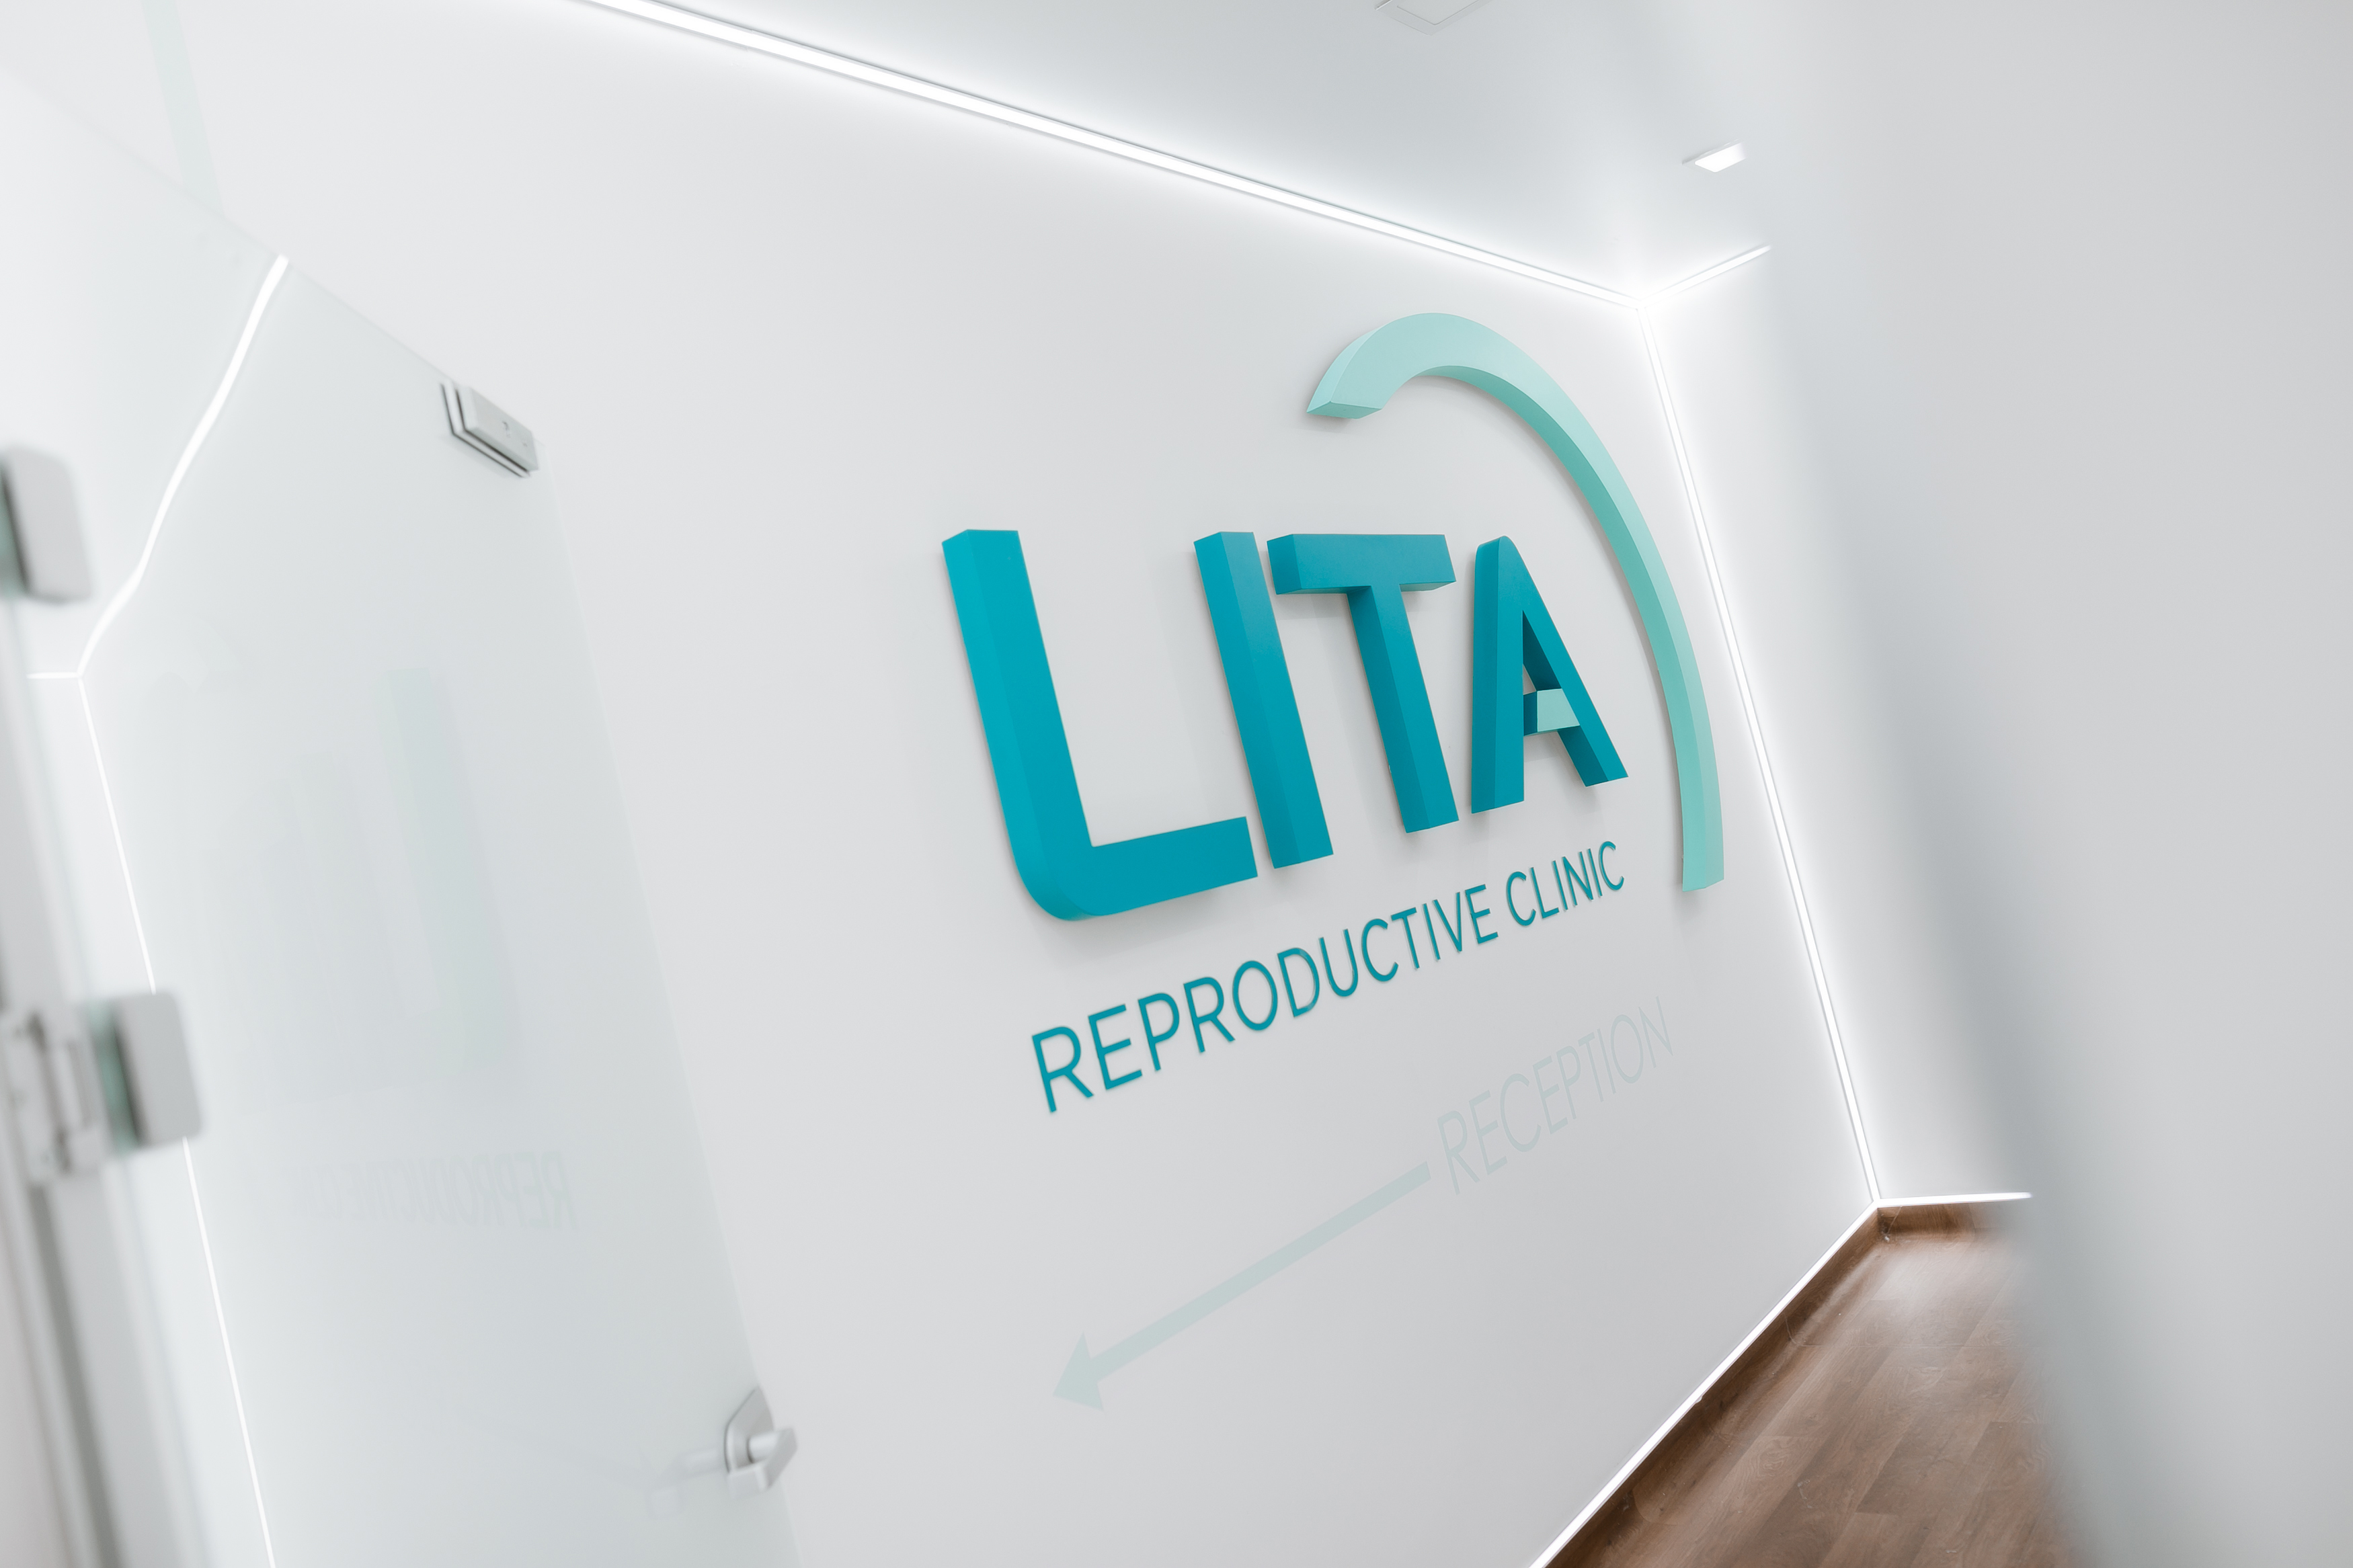 Klinika medycyny rozrodu "LITA"